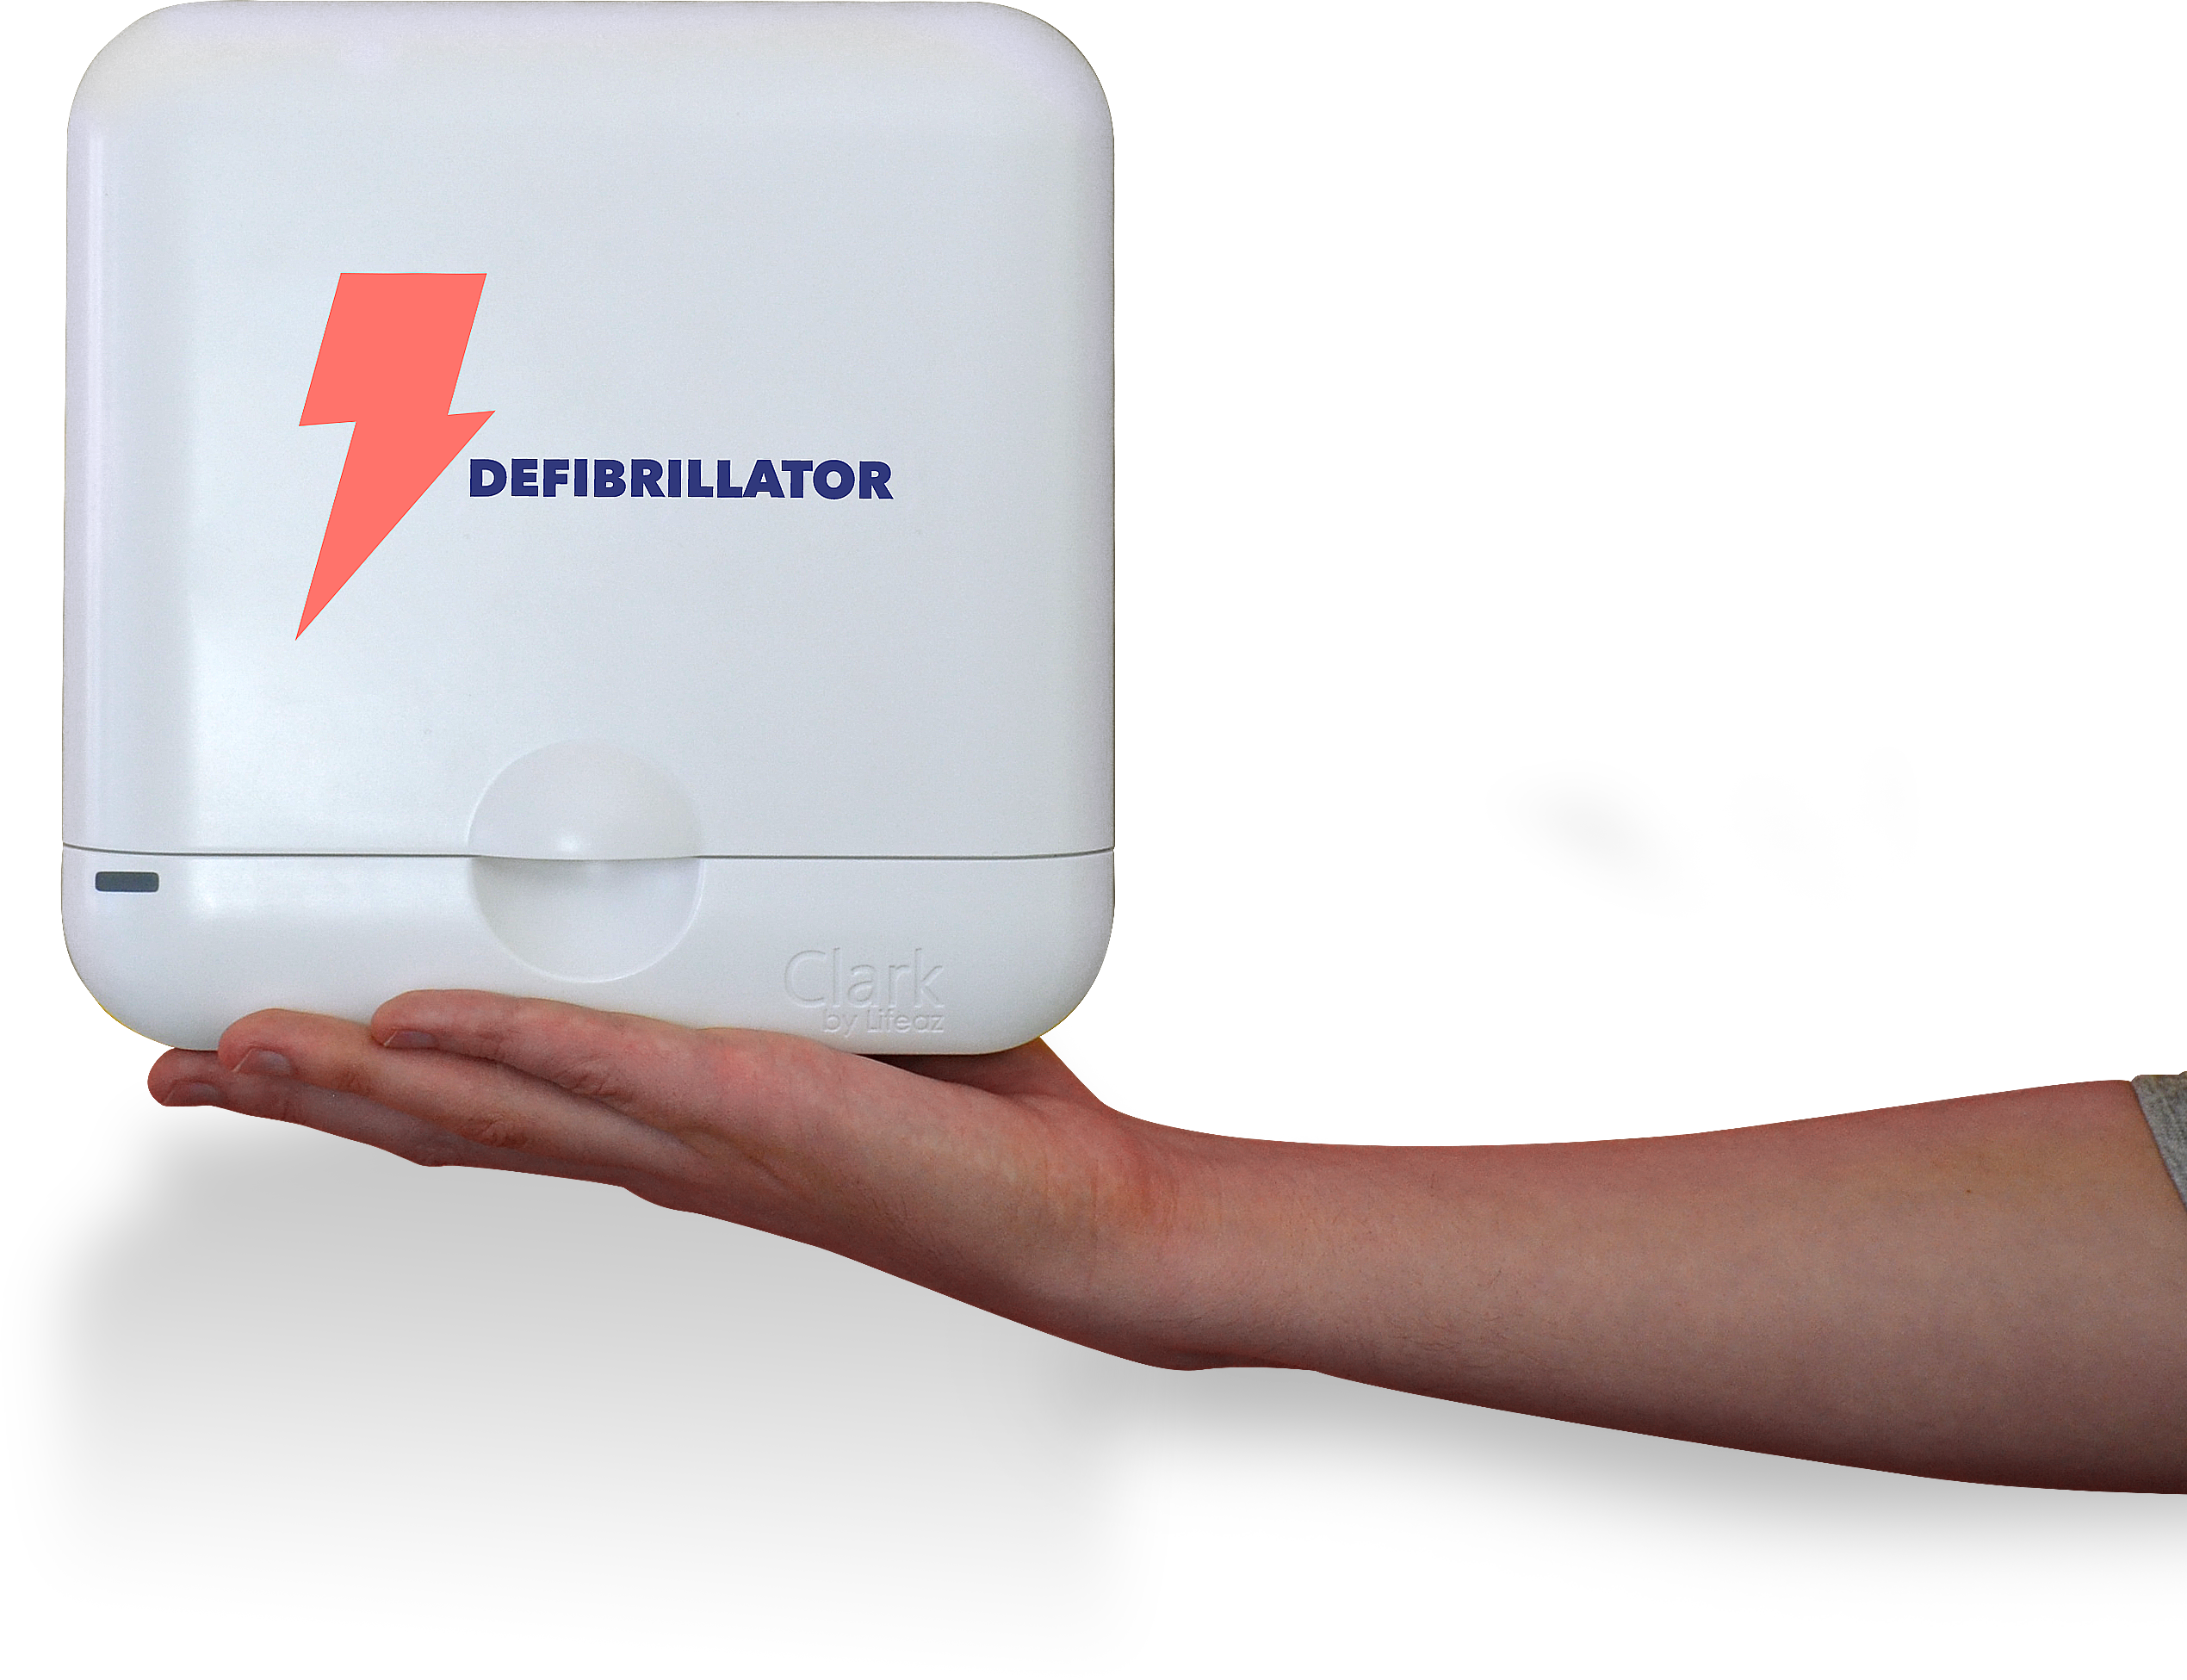 Lifeaz présente le premier défibrillateur portable et connecté pour la  maison #CES2023 - Maison et Domotique